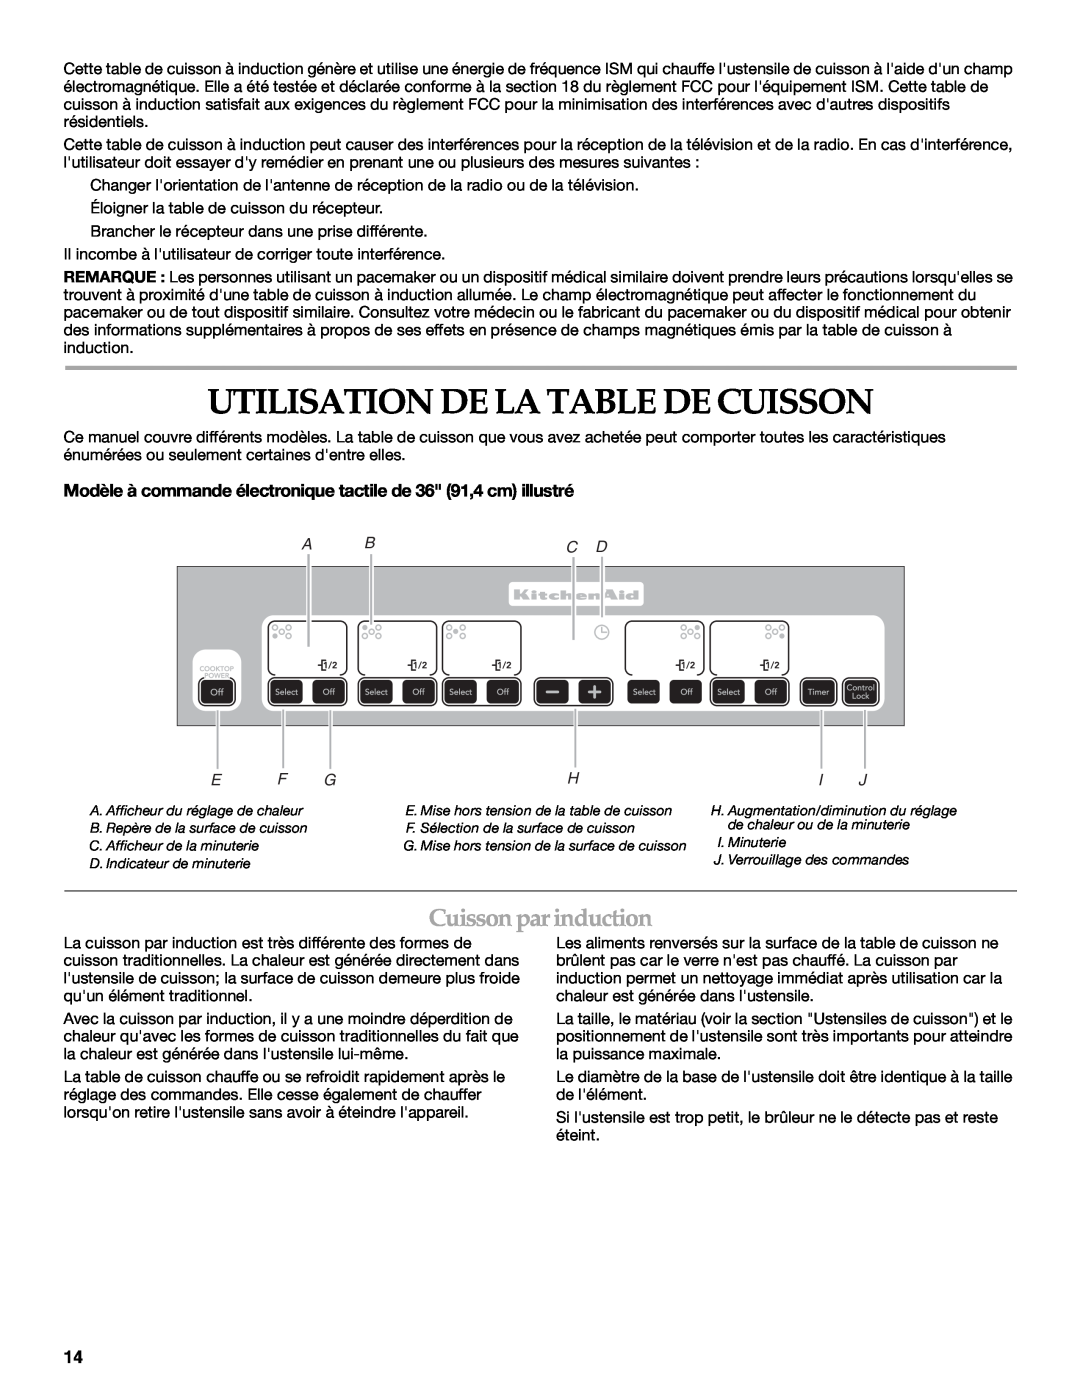 KitchenAid KICU508S, KICU568S manual Utilisation De La Table De Cuisson, Cuissonparinduction, A Bc D 